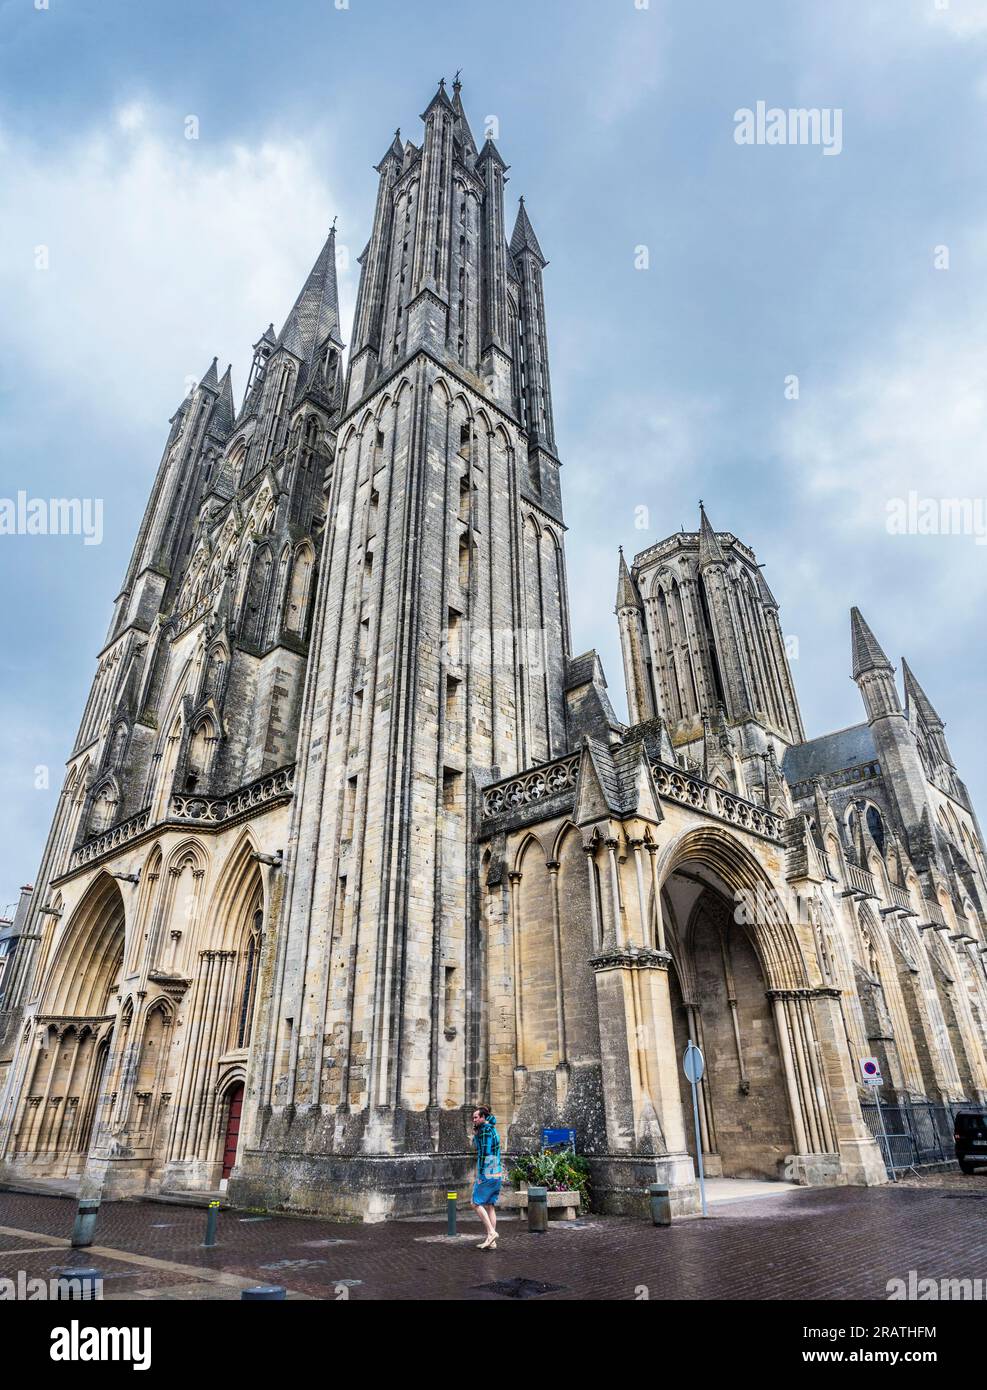 Cattedrale di Coutances, Cathédrale Notre-Dame de Coutances, cattedrale gotica cattolica del XIII secolo nella città di Coutances sulla penisola di Cotentin i Foto Stock